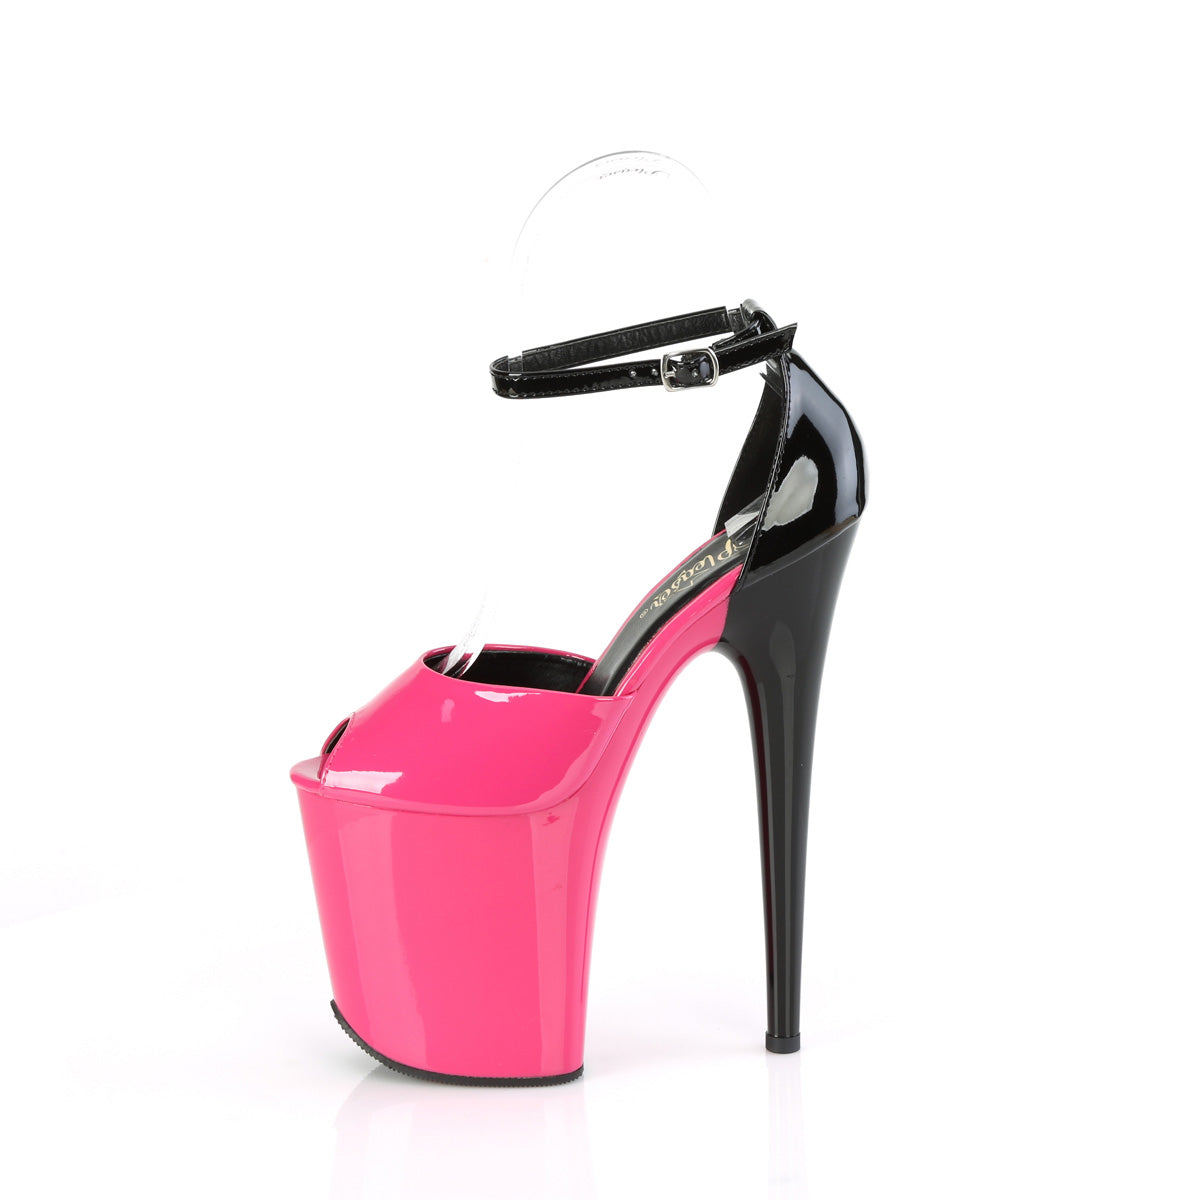 FLAMINGO-868 Black & Red Ankle Peep Toe High Heel Black & Pink Multi view 4